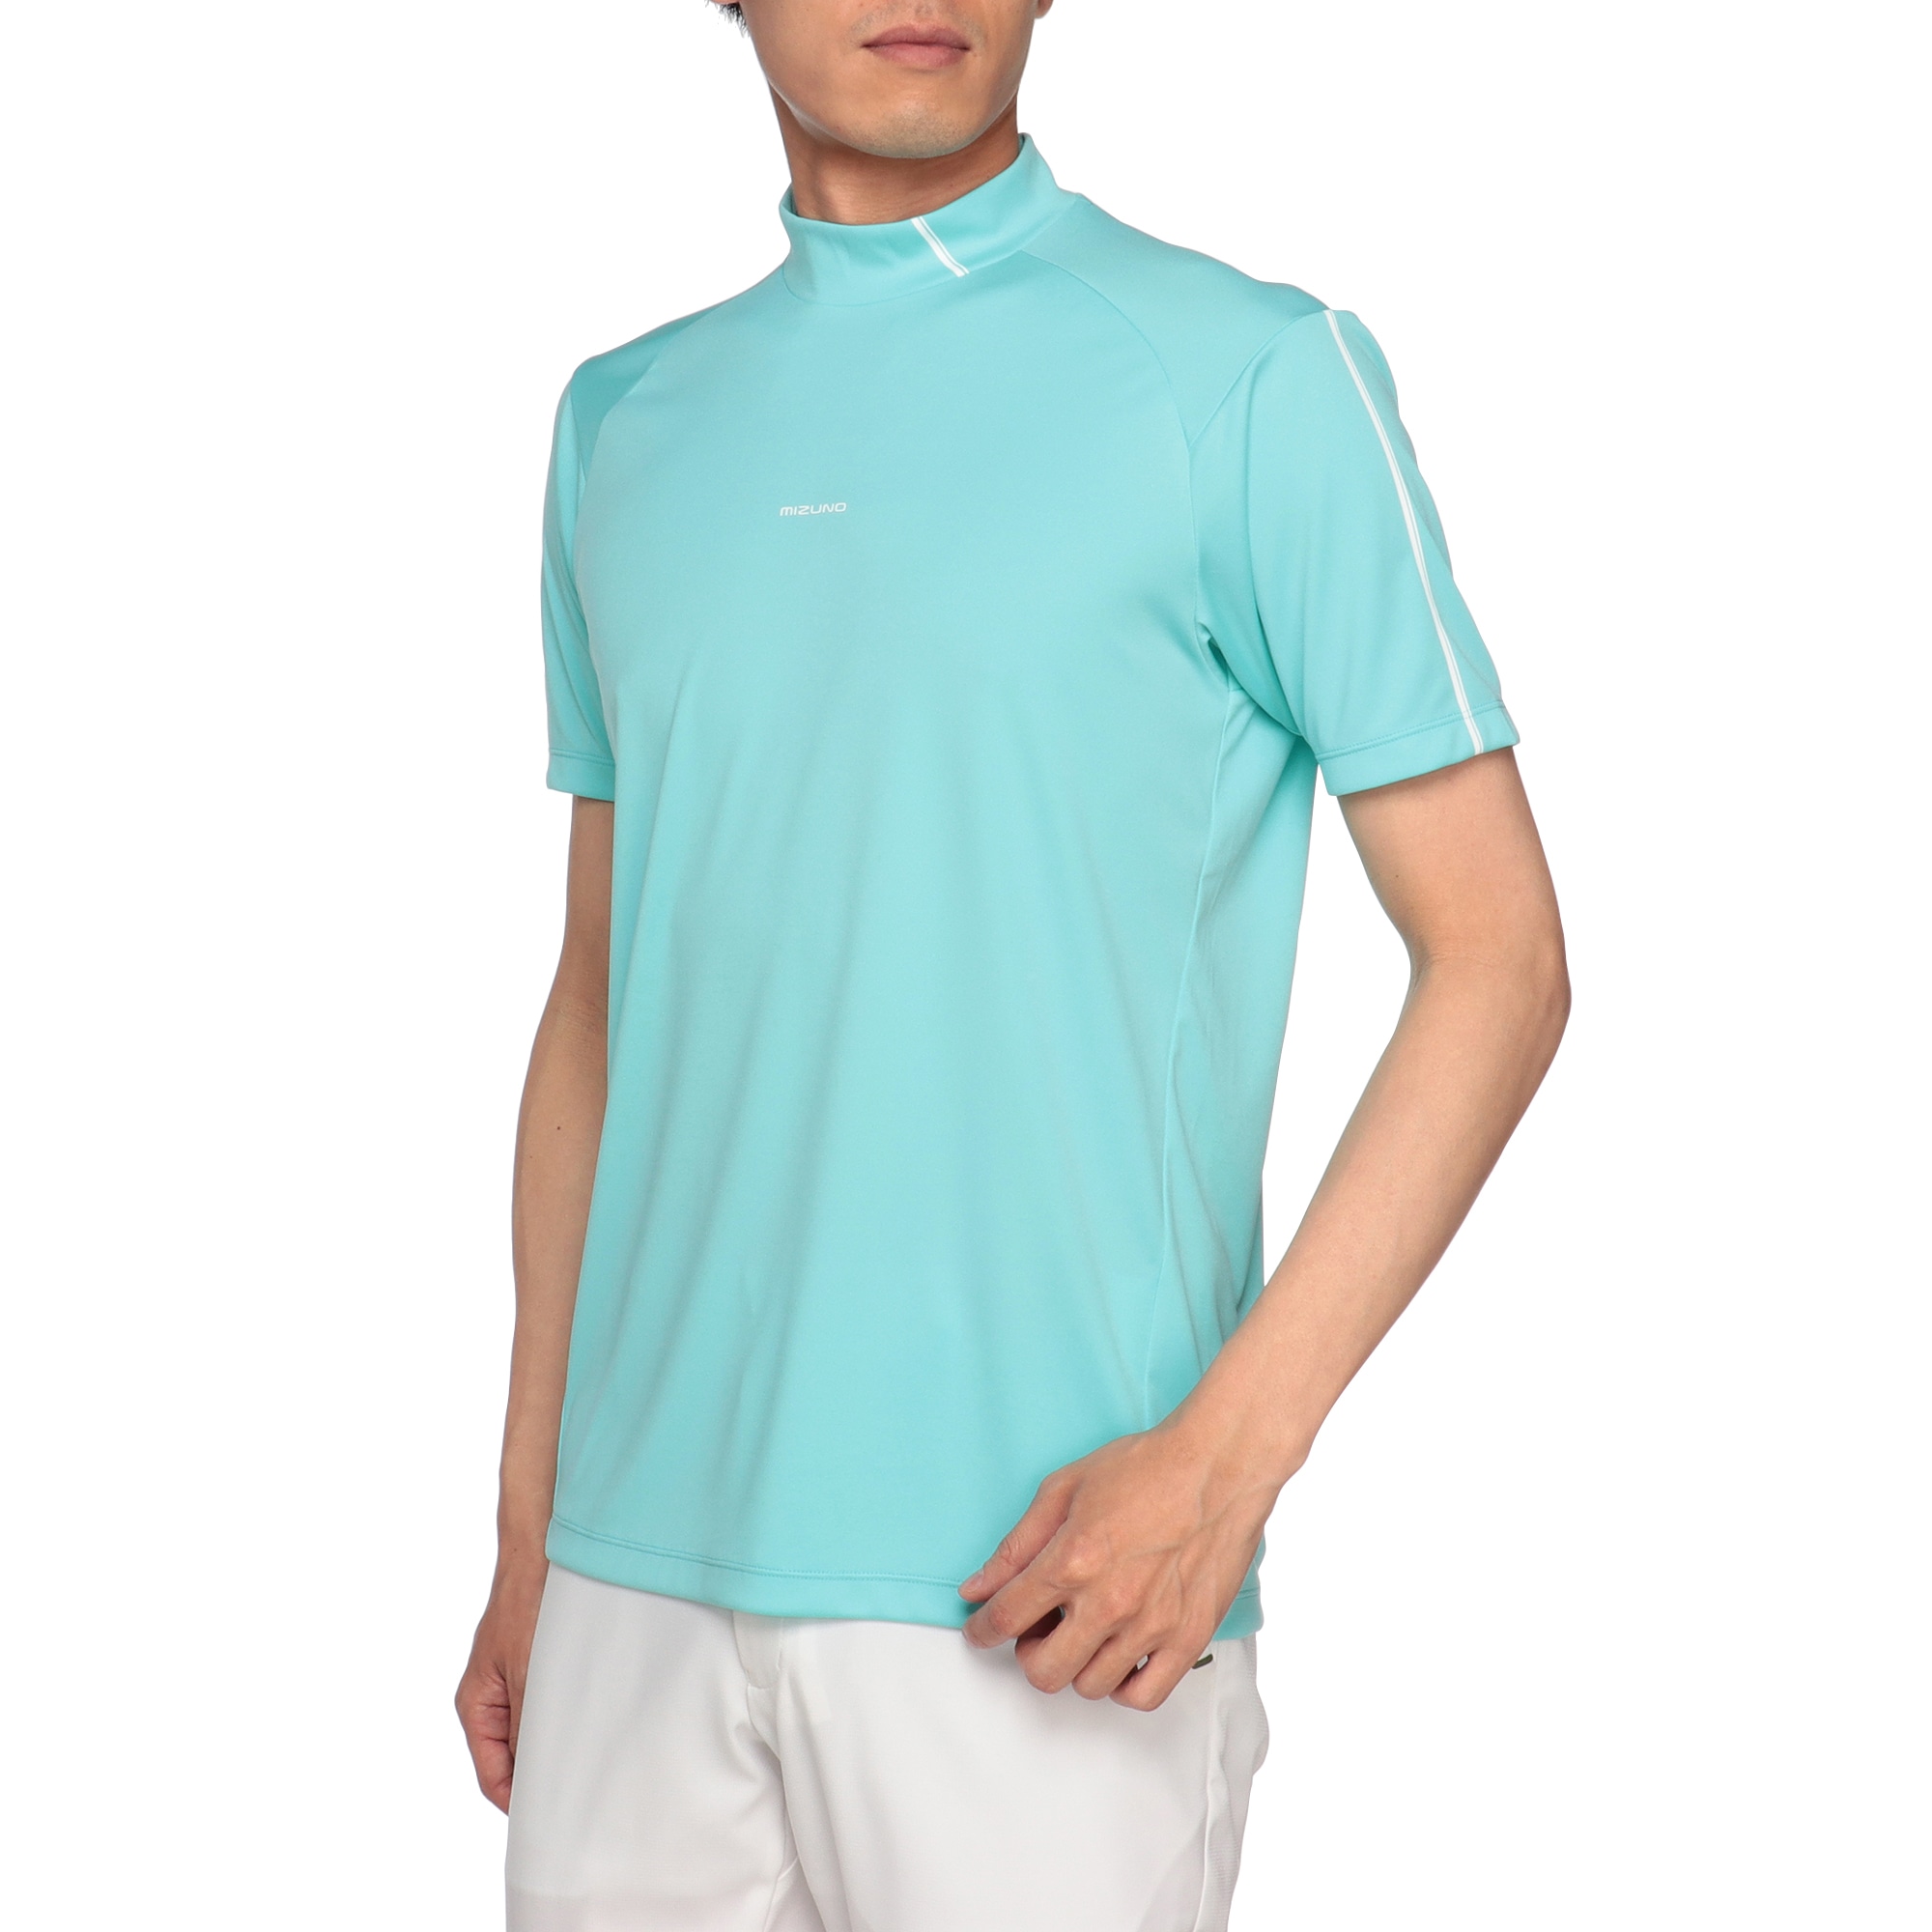 スムース半袖モックネックシャツ[メンズ]|E2MAA008|半袖シャツ|ゴルフ